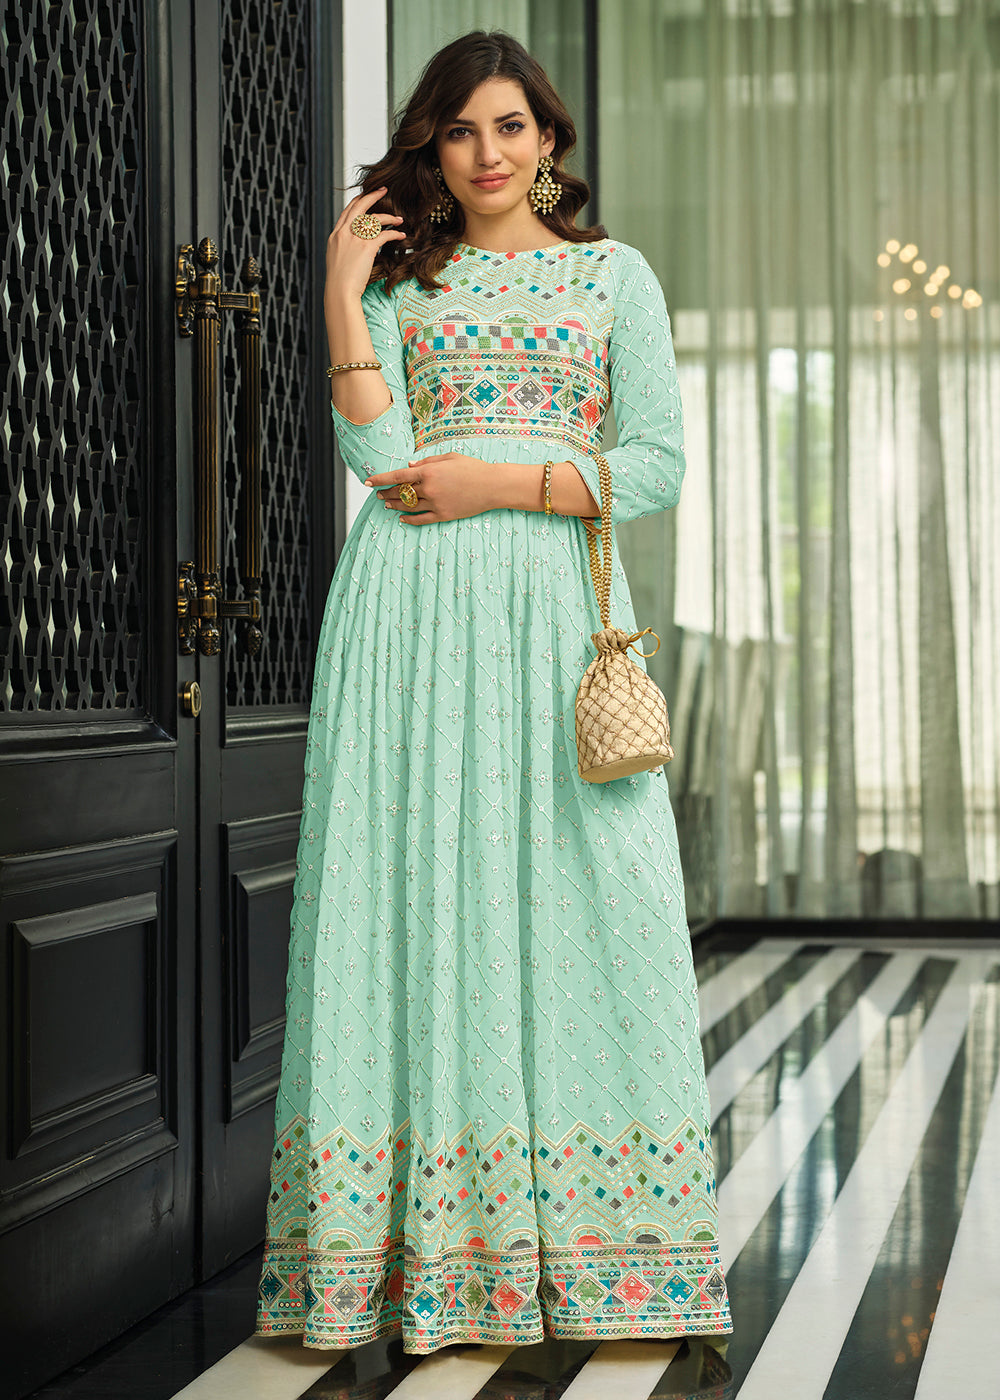 Shop Now Sky Blue Trendy Georgette Embellished Anarkali Suit Online at Empress Clothing in USA. 